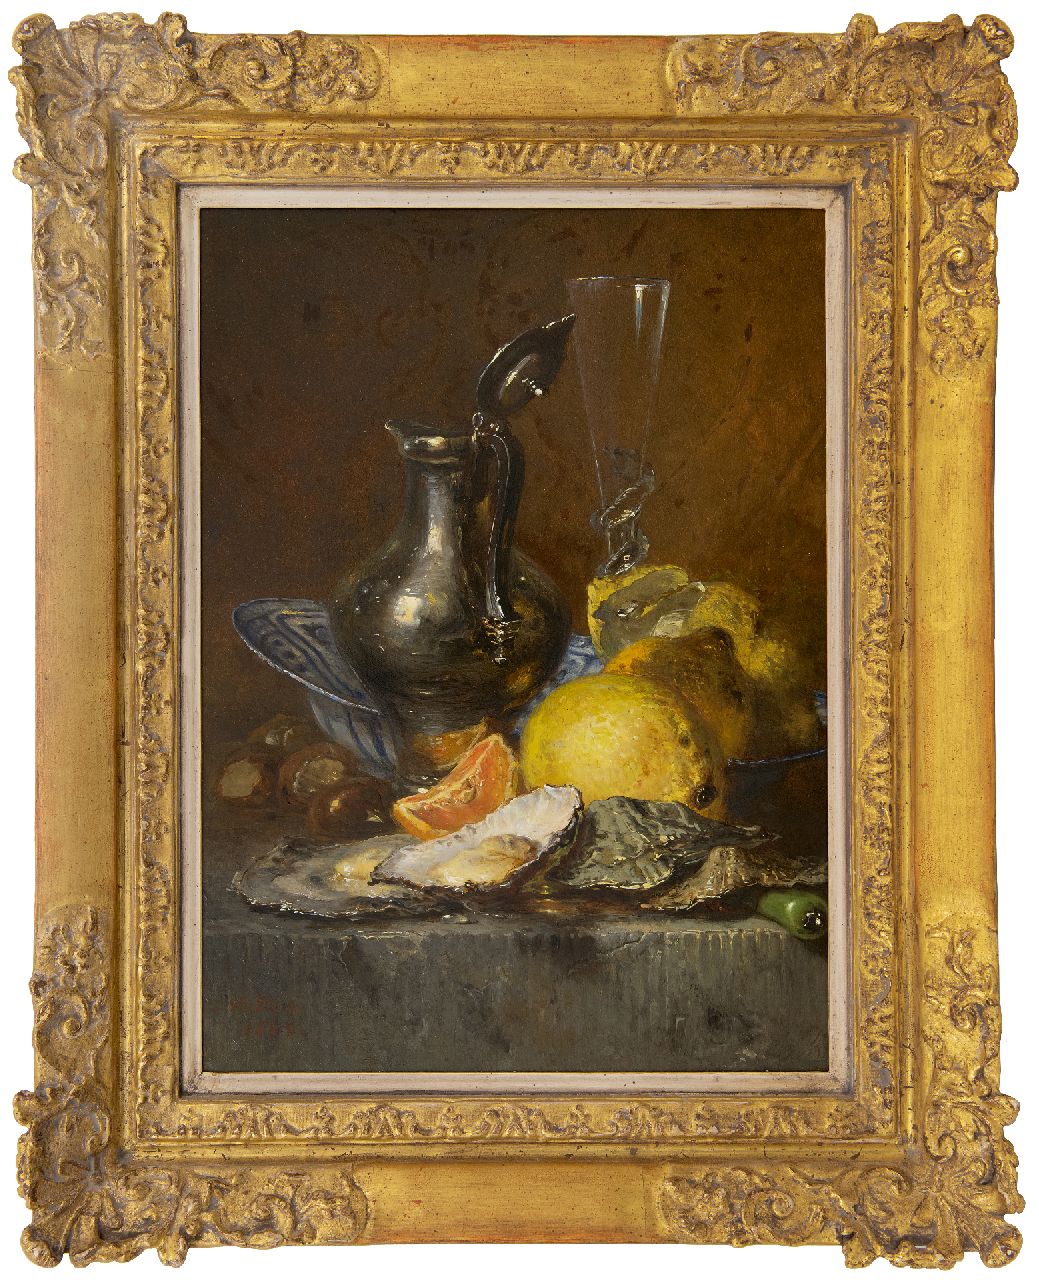 Vos M.  | Maria Vos, Stilleven met oesters, citroenen en zilveren kan, olieverf op paneel 38,6 x 27,6 cm, gesigneerd linksonder en gedateerd 1880